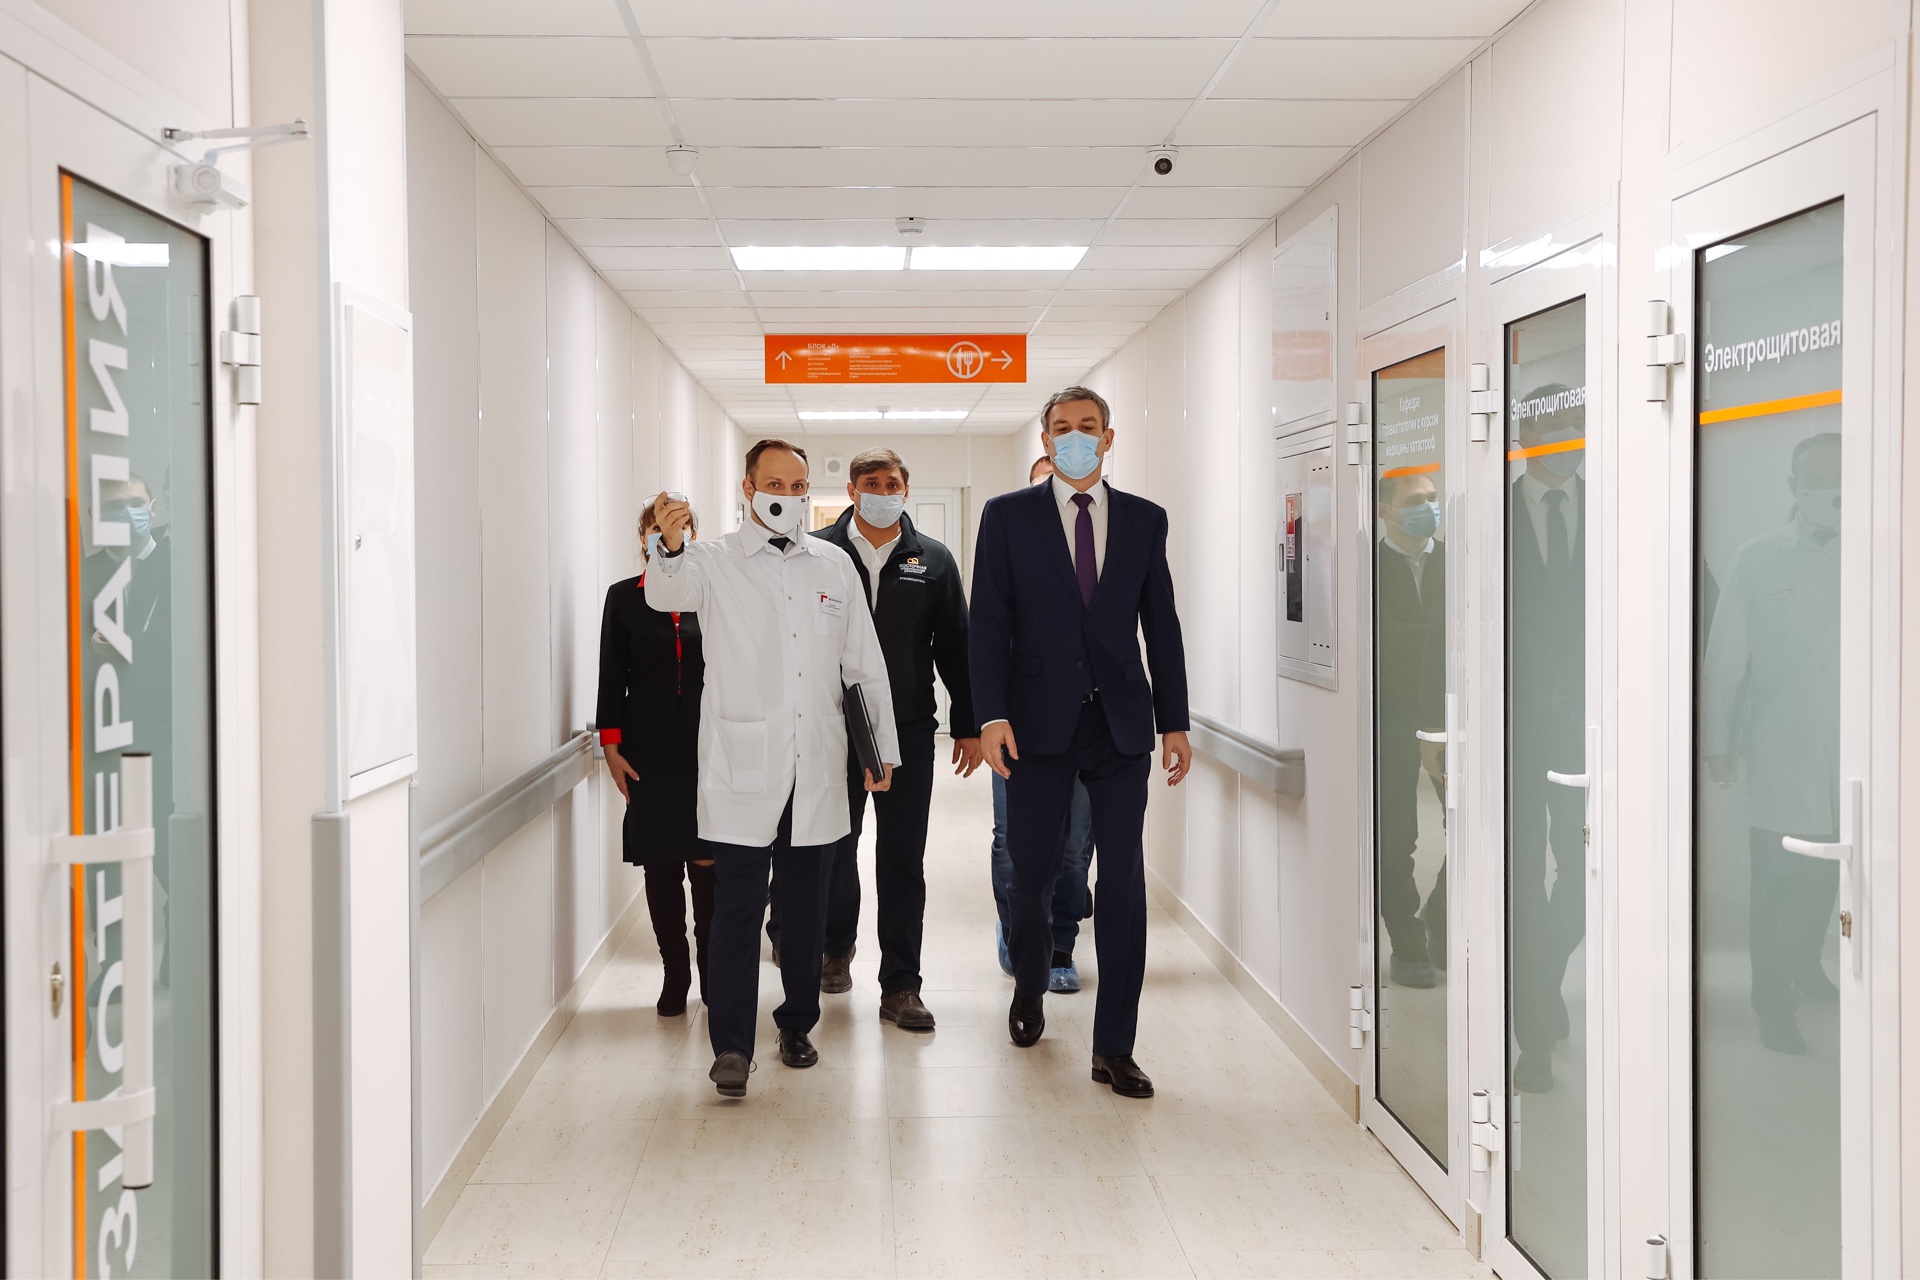 Обучение медиков и студентов начнут в новых залах Амурской областной больницы